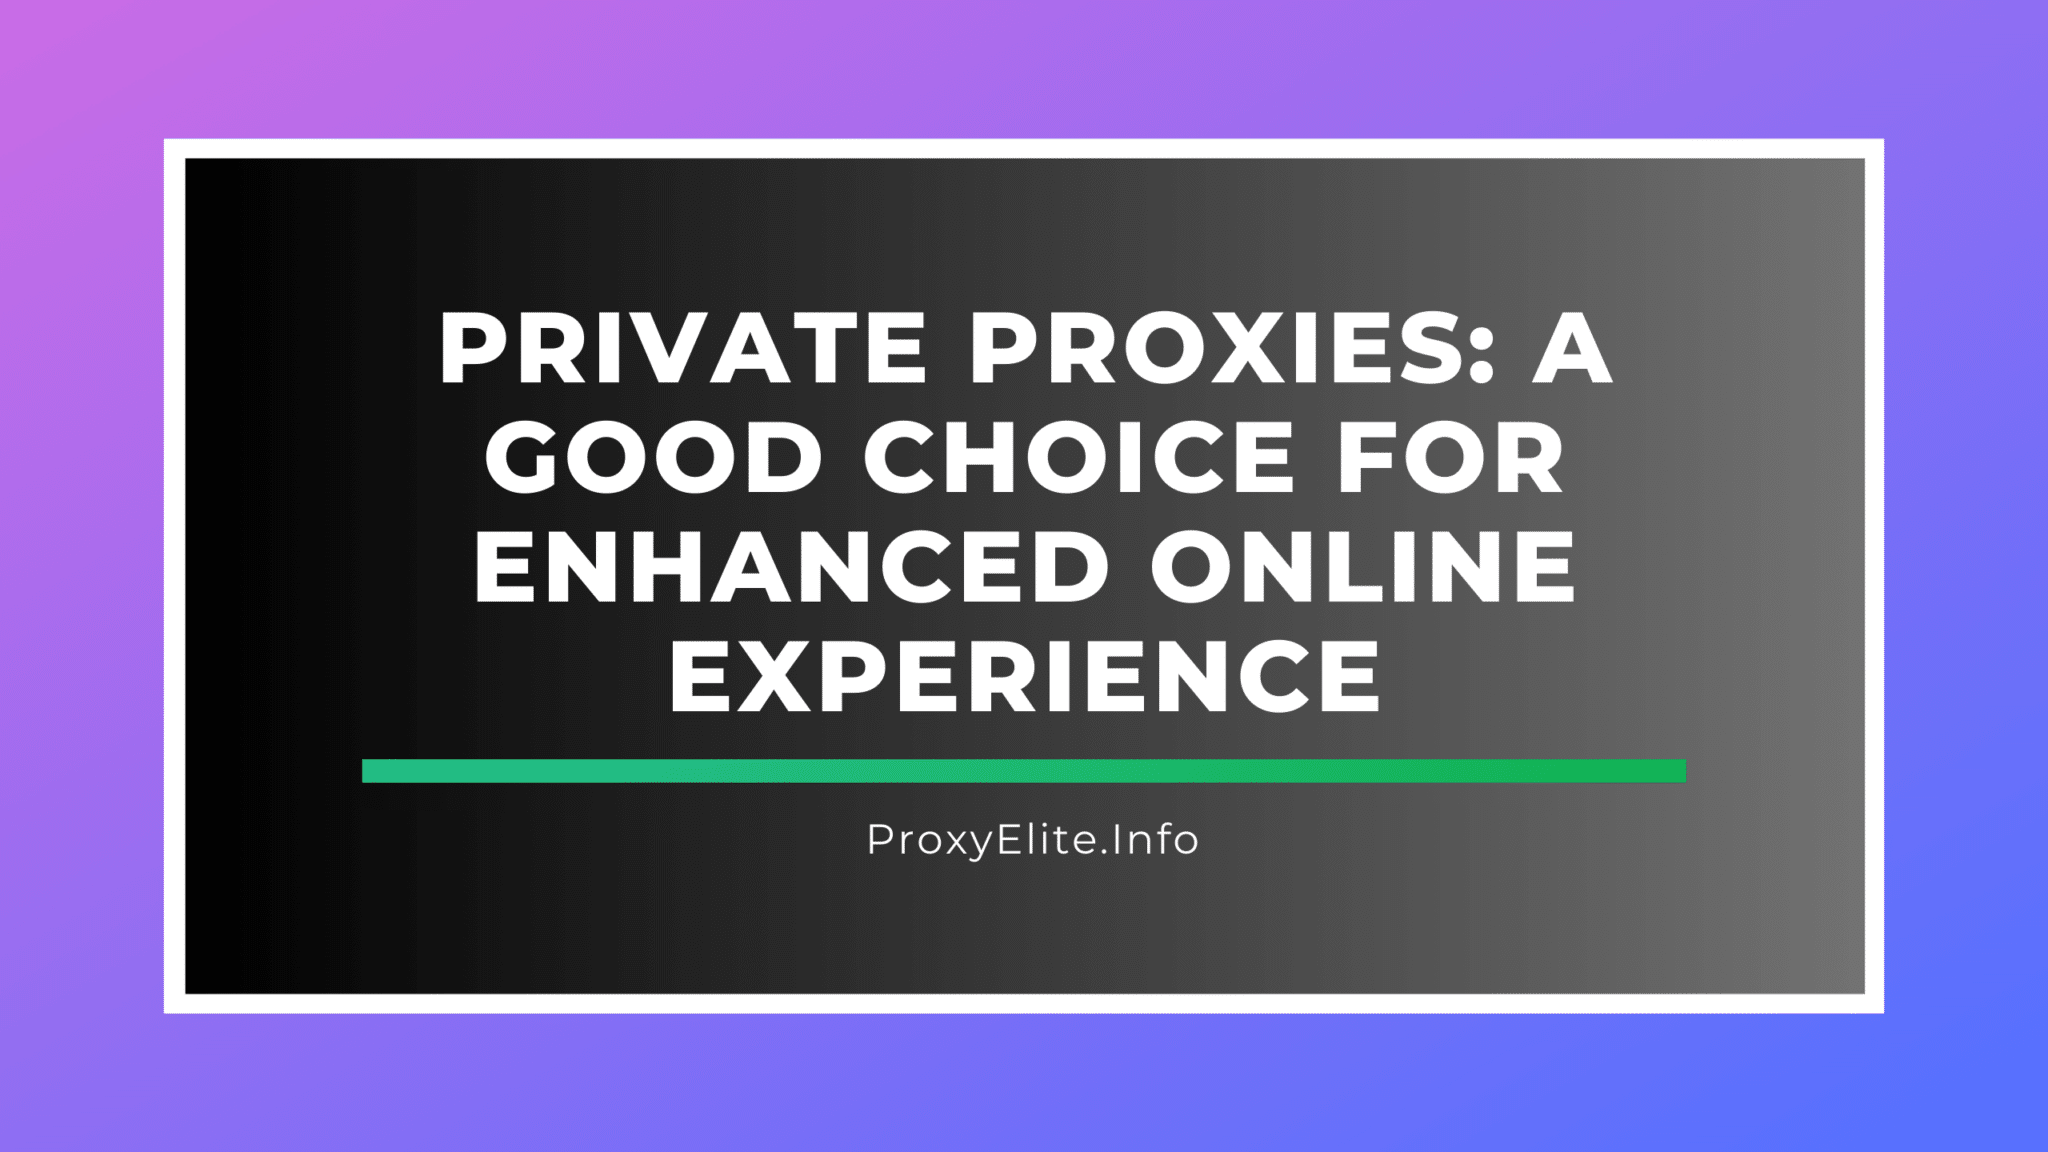 Proxy riêng: Lựa chọn tốt để nâng cao trải nghiệm trực tuyến